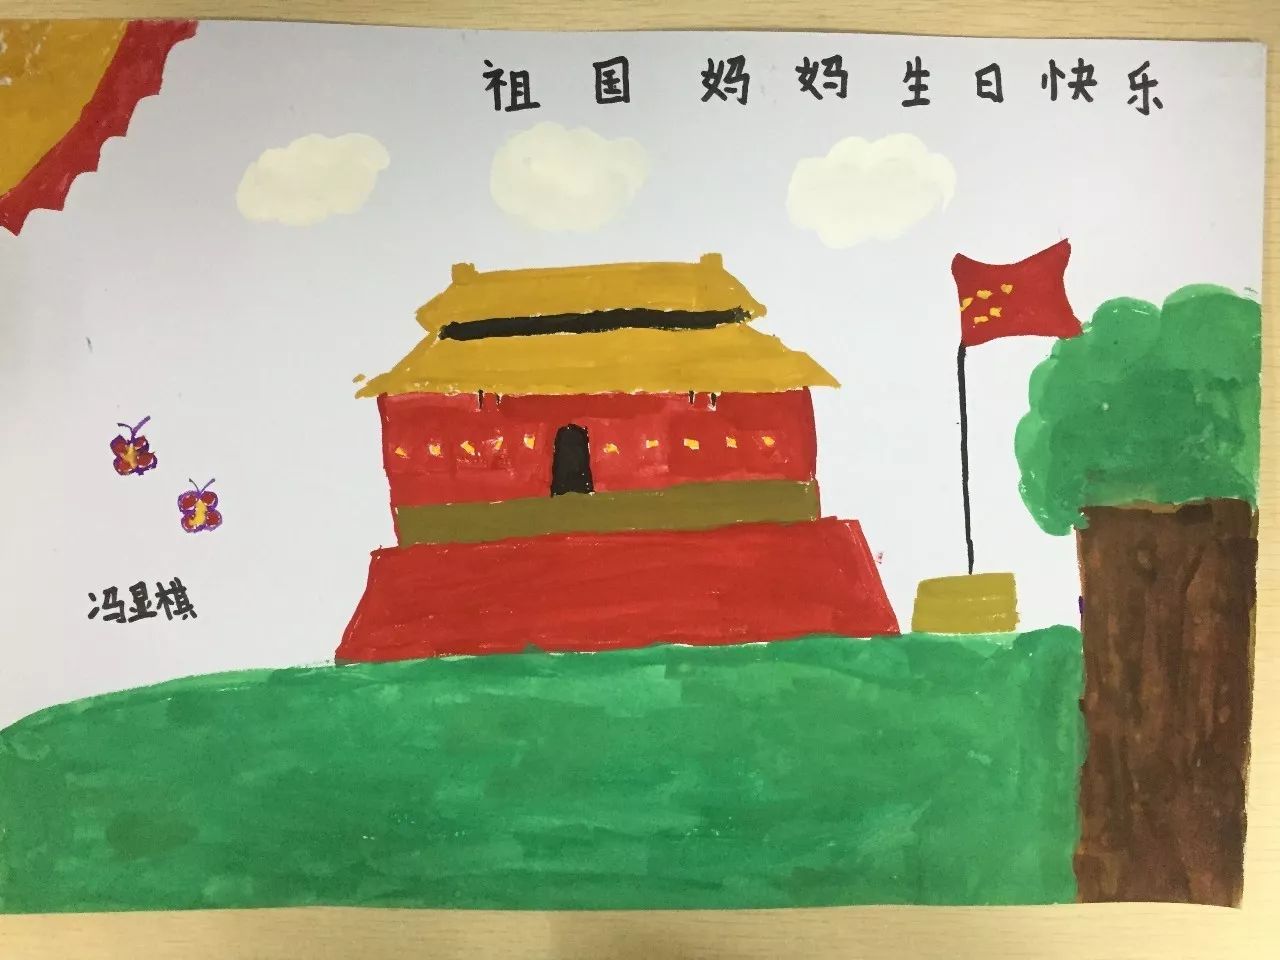 名单公布 ▏国庆"我爱我的祖国"儿童绘画比赛获奖名单